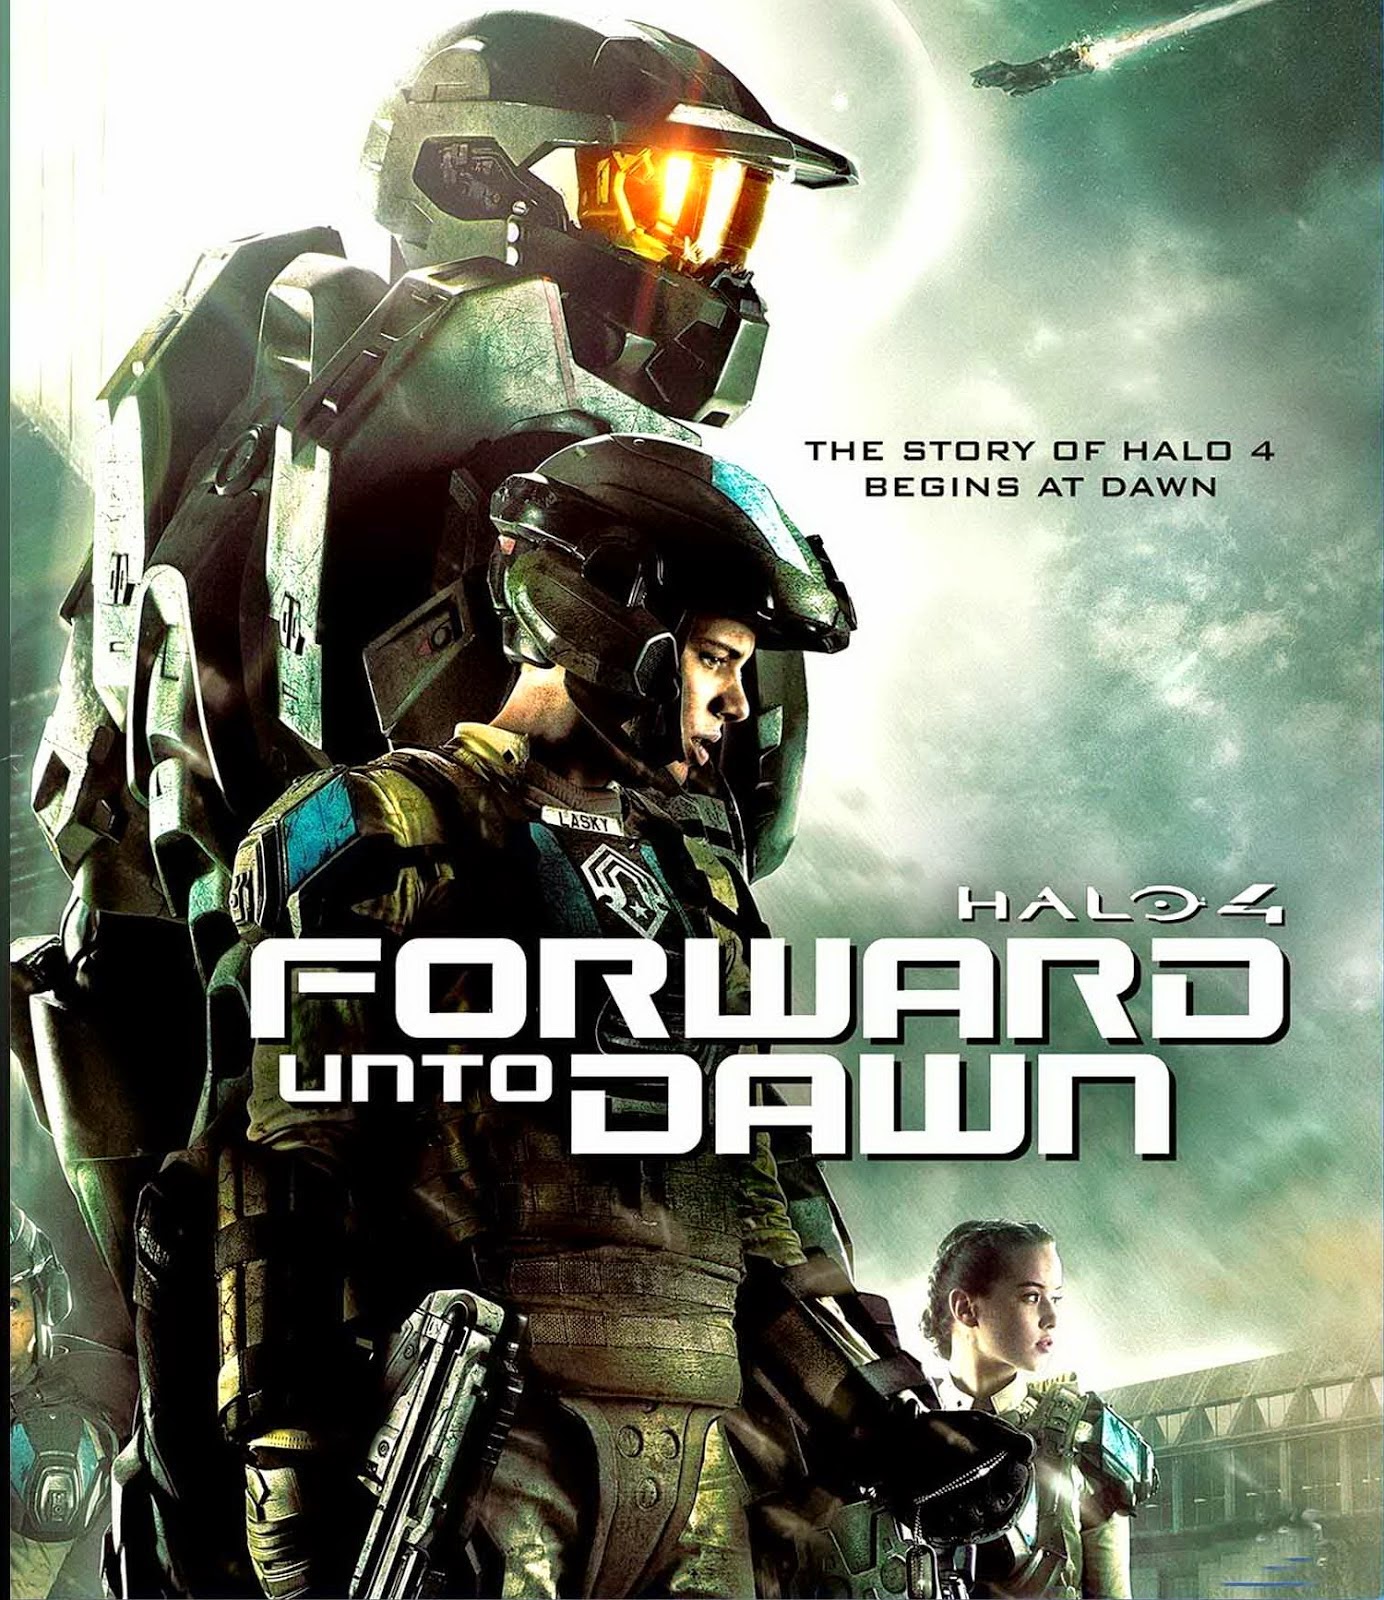 ดูหนังออนไลน์ฟรี Halo 4 Forward Unto Dawn เฮโล 4 หน่วยฝึกรบมหากาฬ